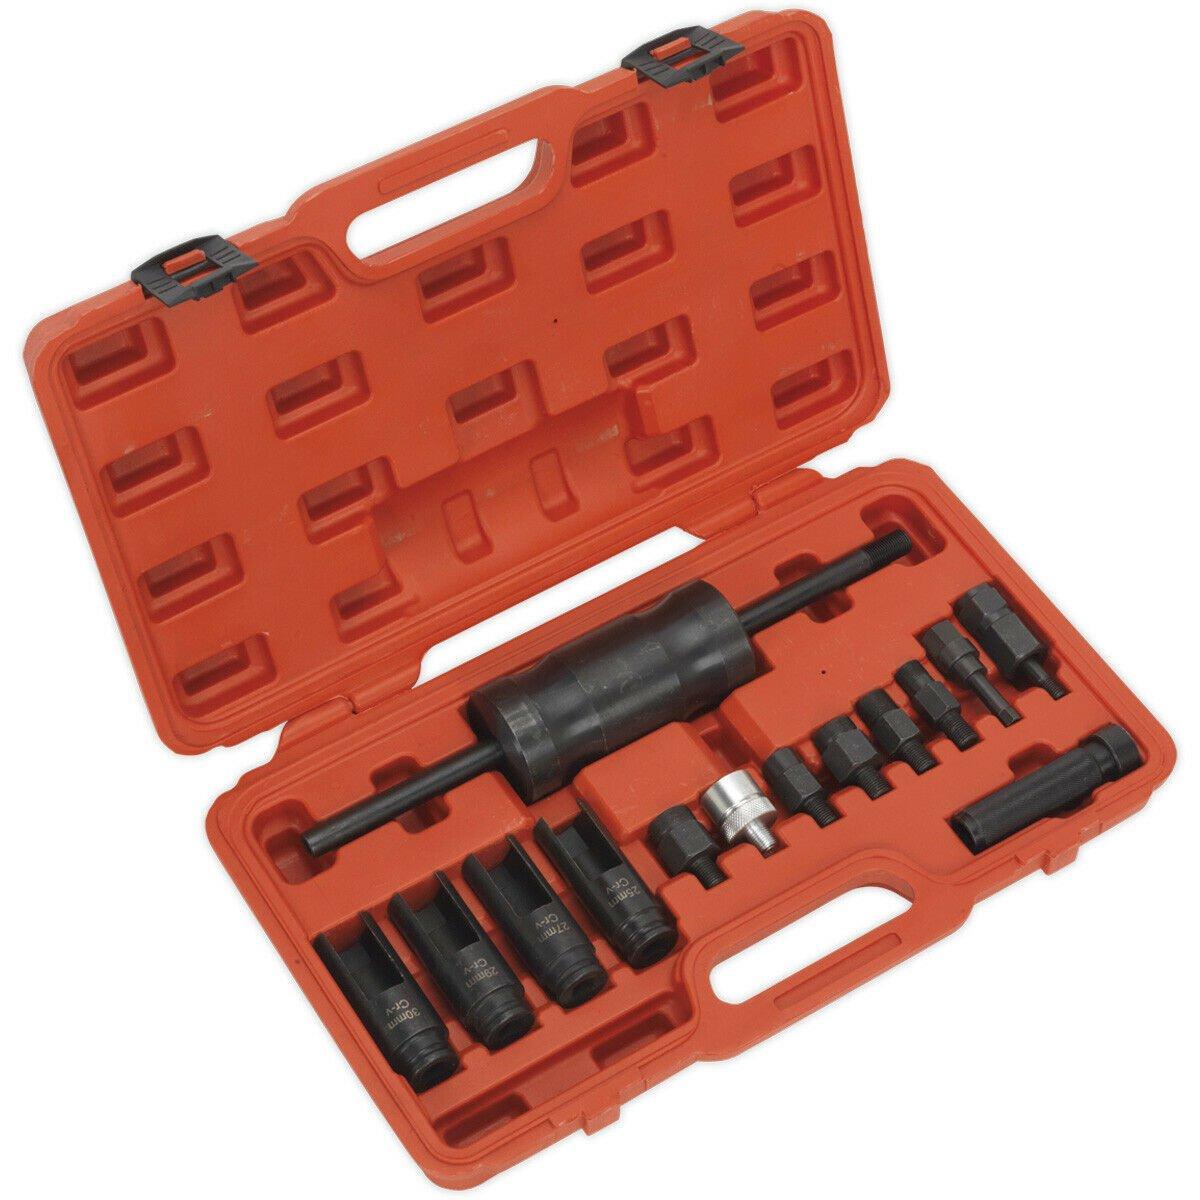 14 Piece Diesel Injector Puller Set - Ball Joint - Slide Hammer - Deep Sockets